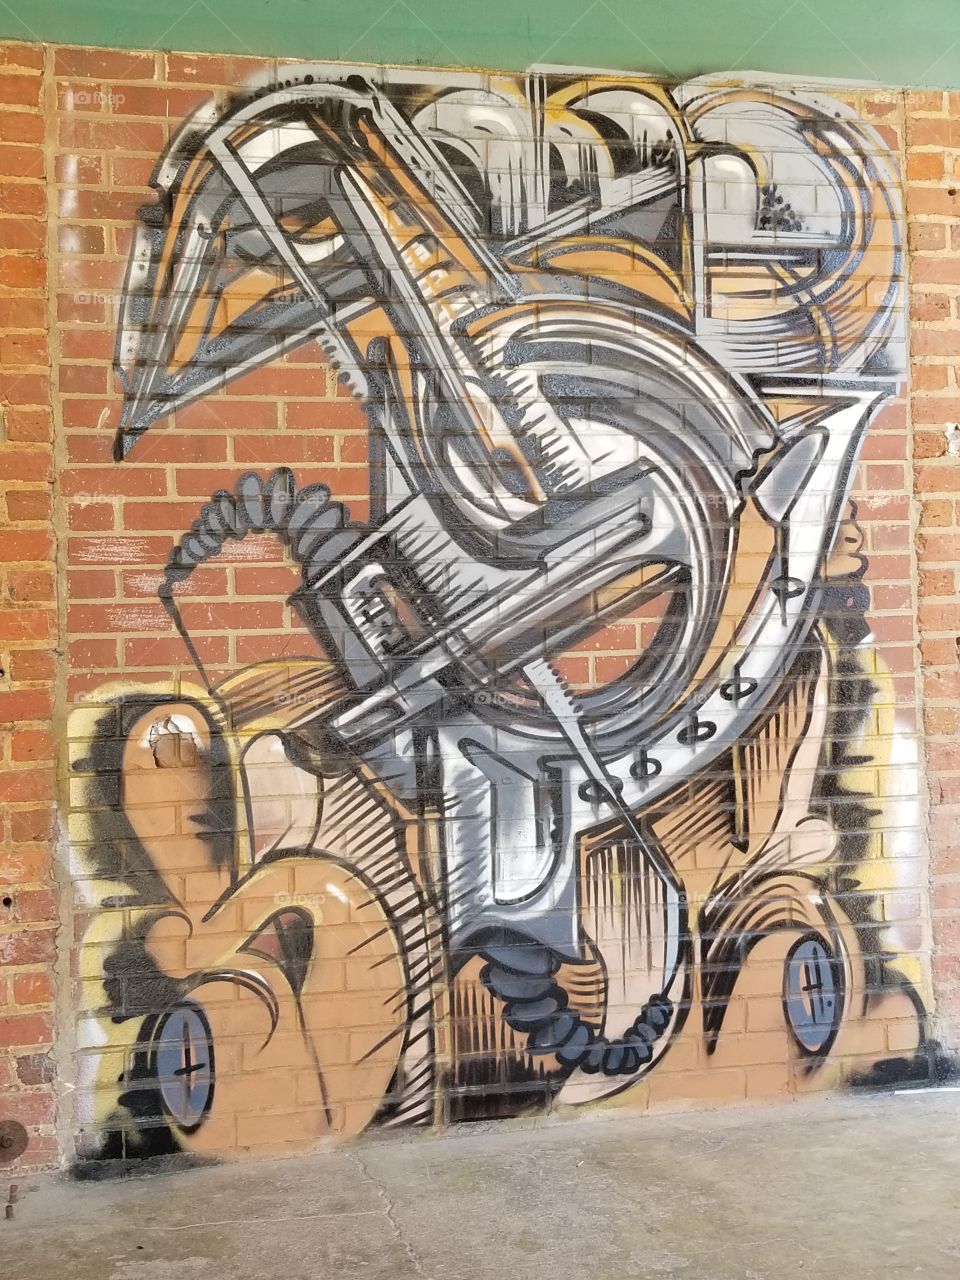 Graffiti abstract artworks downtown brick wall.